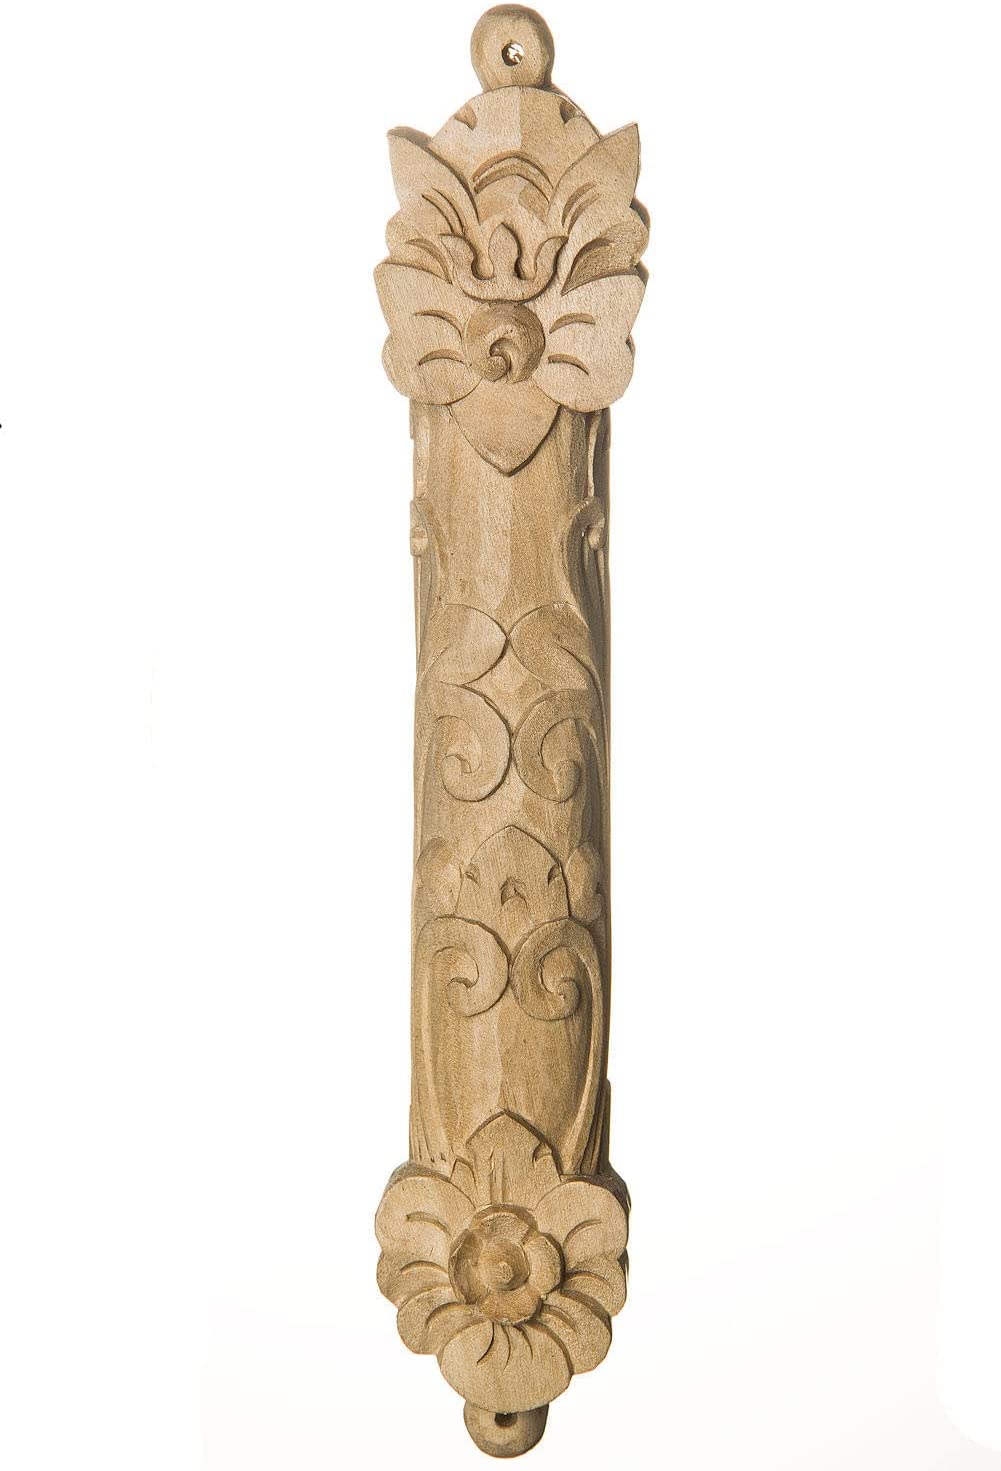 (D) Judaica Wood Crocodile Bamboo Design Mezuzah Case for Door (6'')